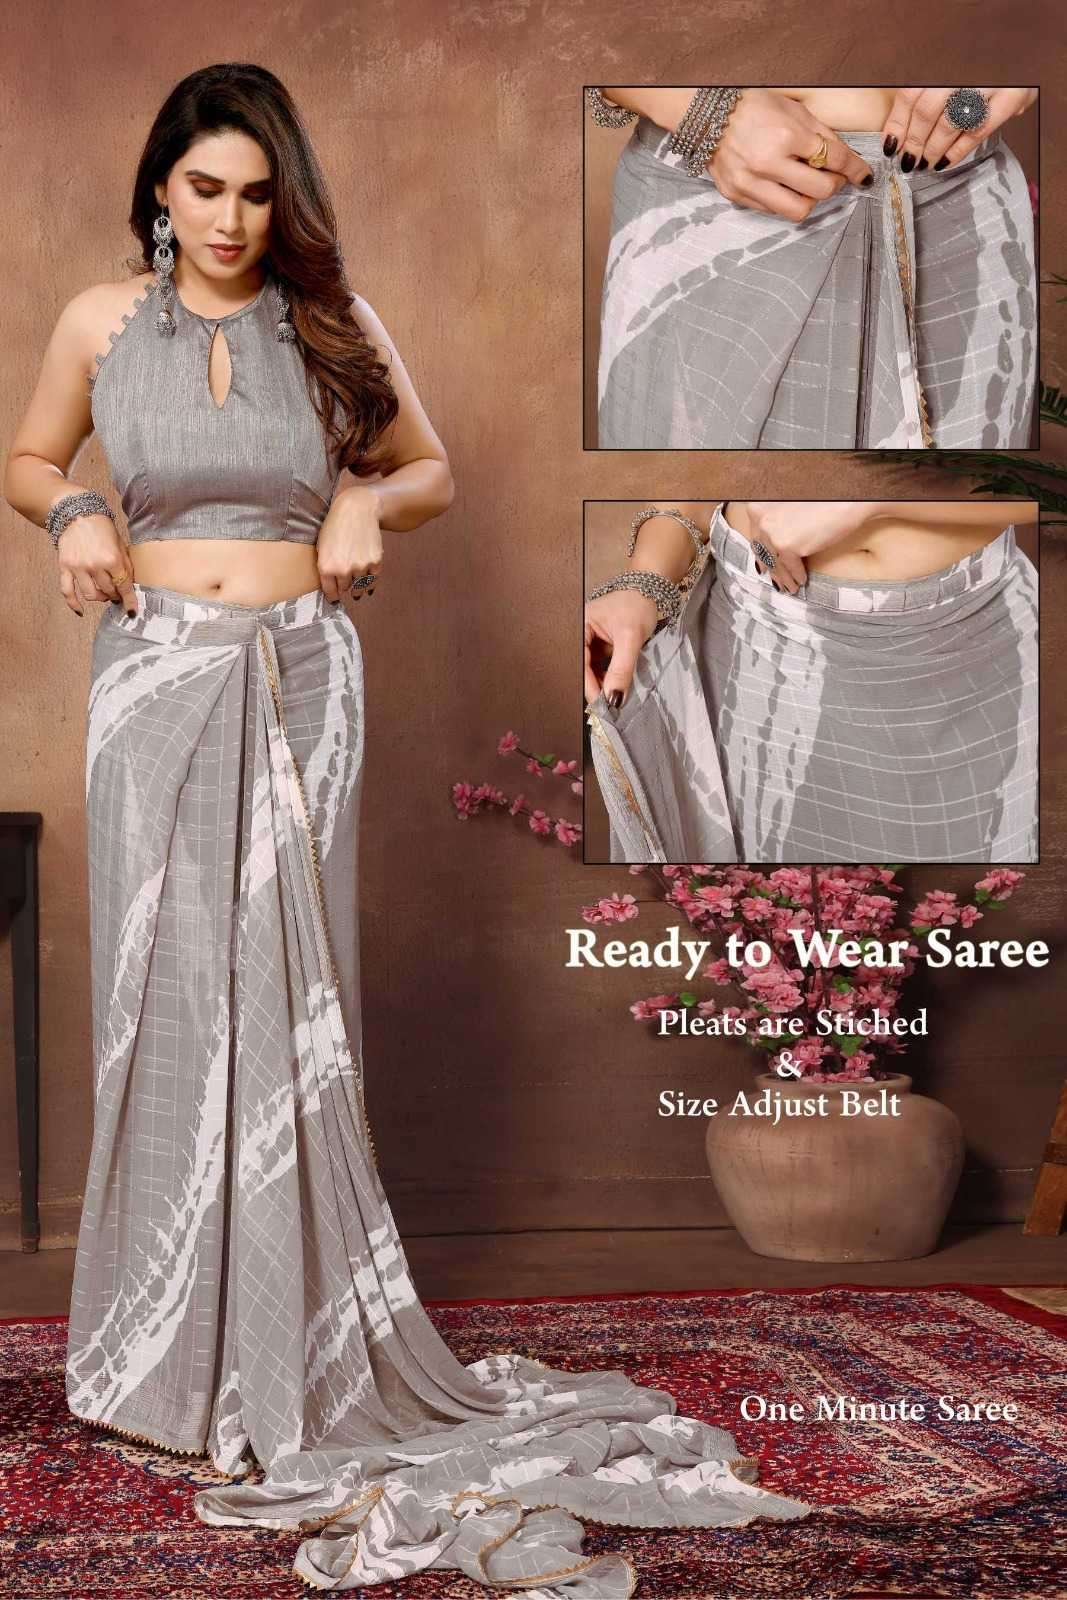 pr tarika stylish georgette hit design pleats are stitch size adjust belt one minute saree